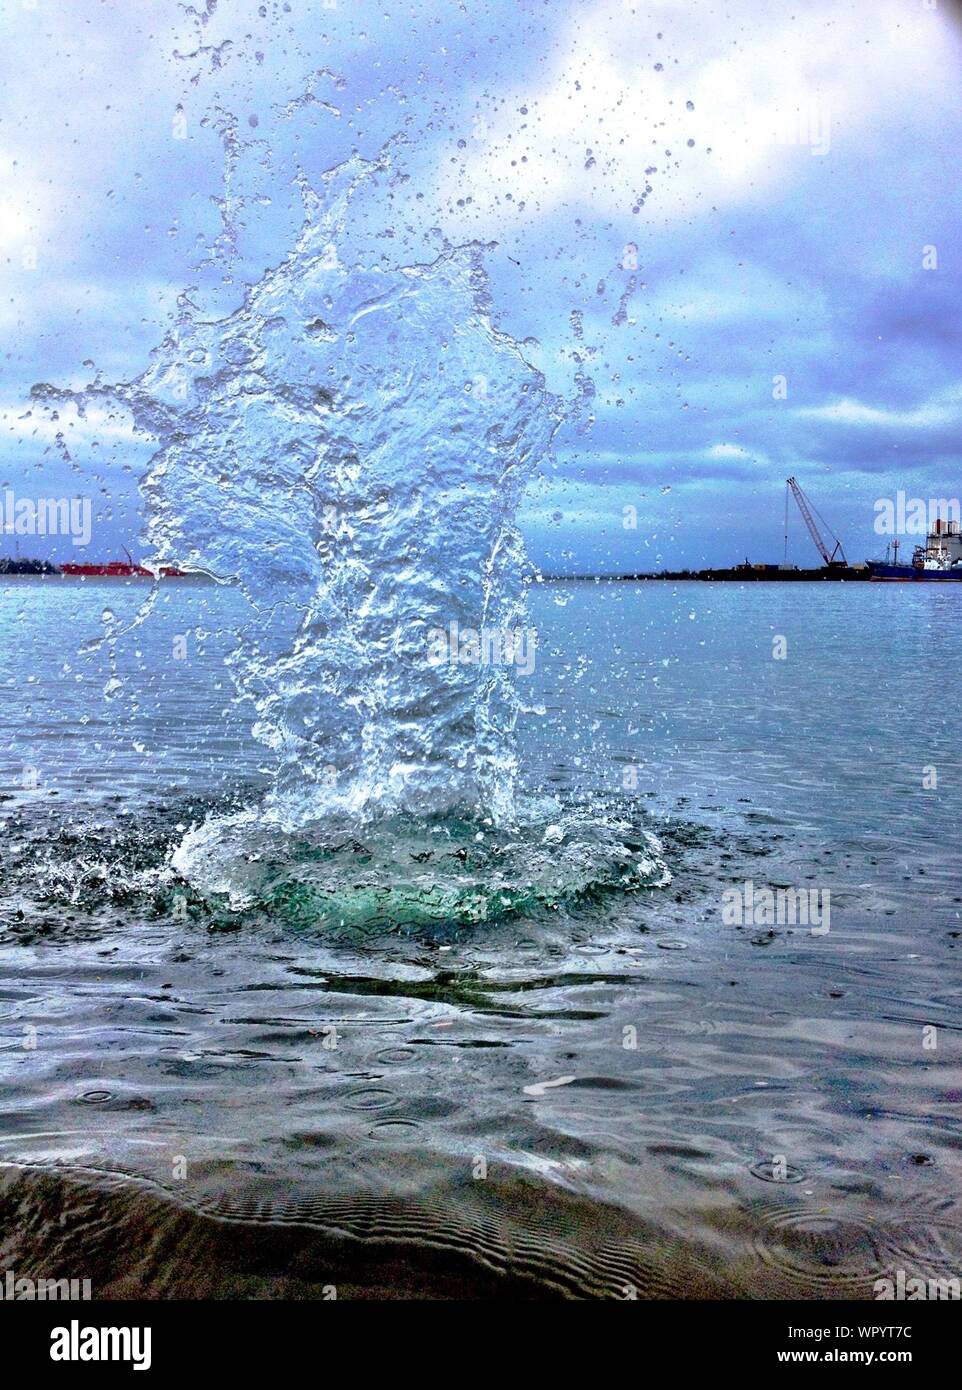 Splash Created By Stone Hitting Water Stock Photo